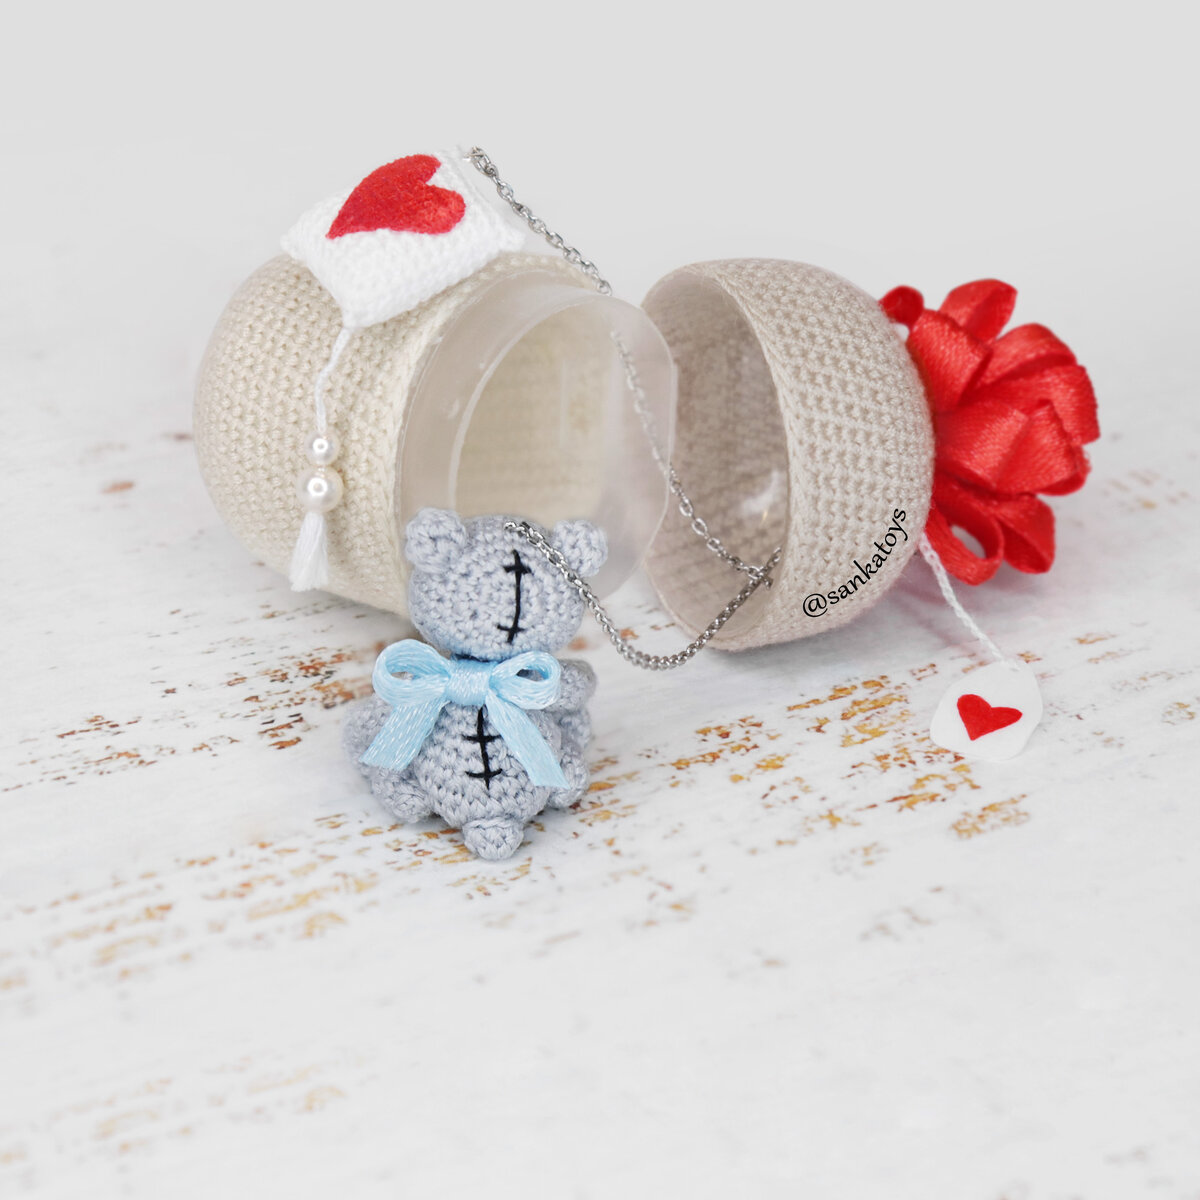 Киндер сюрприз ко дню Святого Валентина 😍
Контейнер с бантиком и бирочкой выглядит как настоящий подарок - а внутри прячется на тоненьких цепочках очаровательный мишка 😍 Пухлые теддики очень любят-1-3